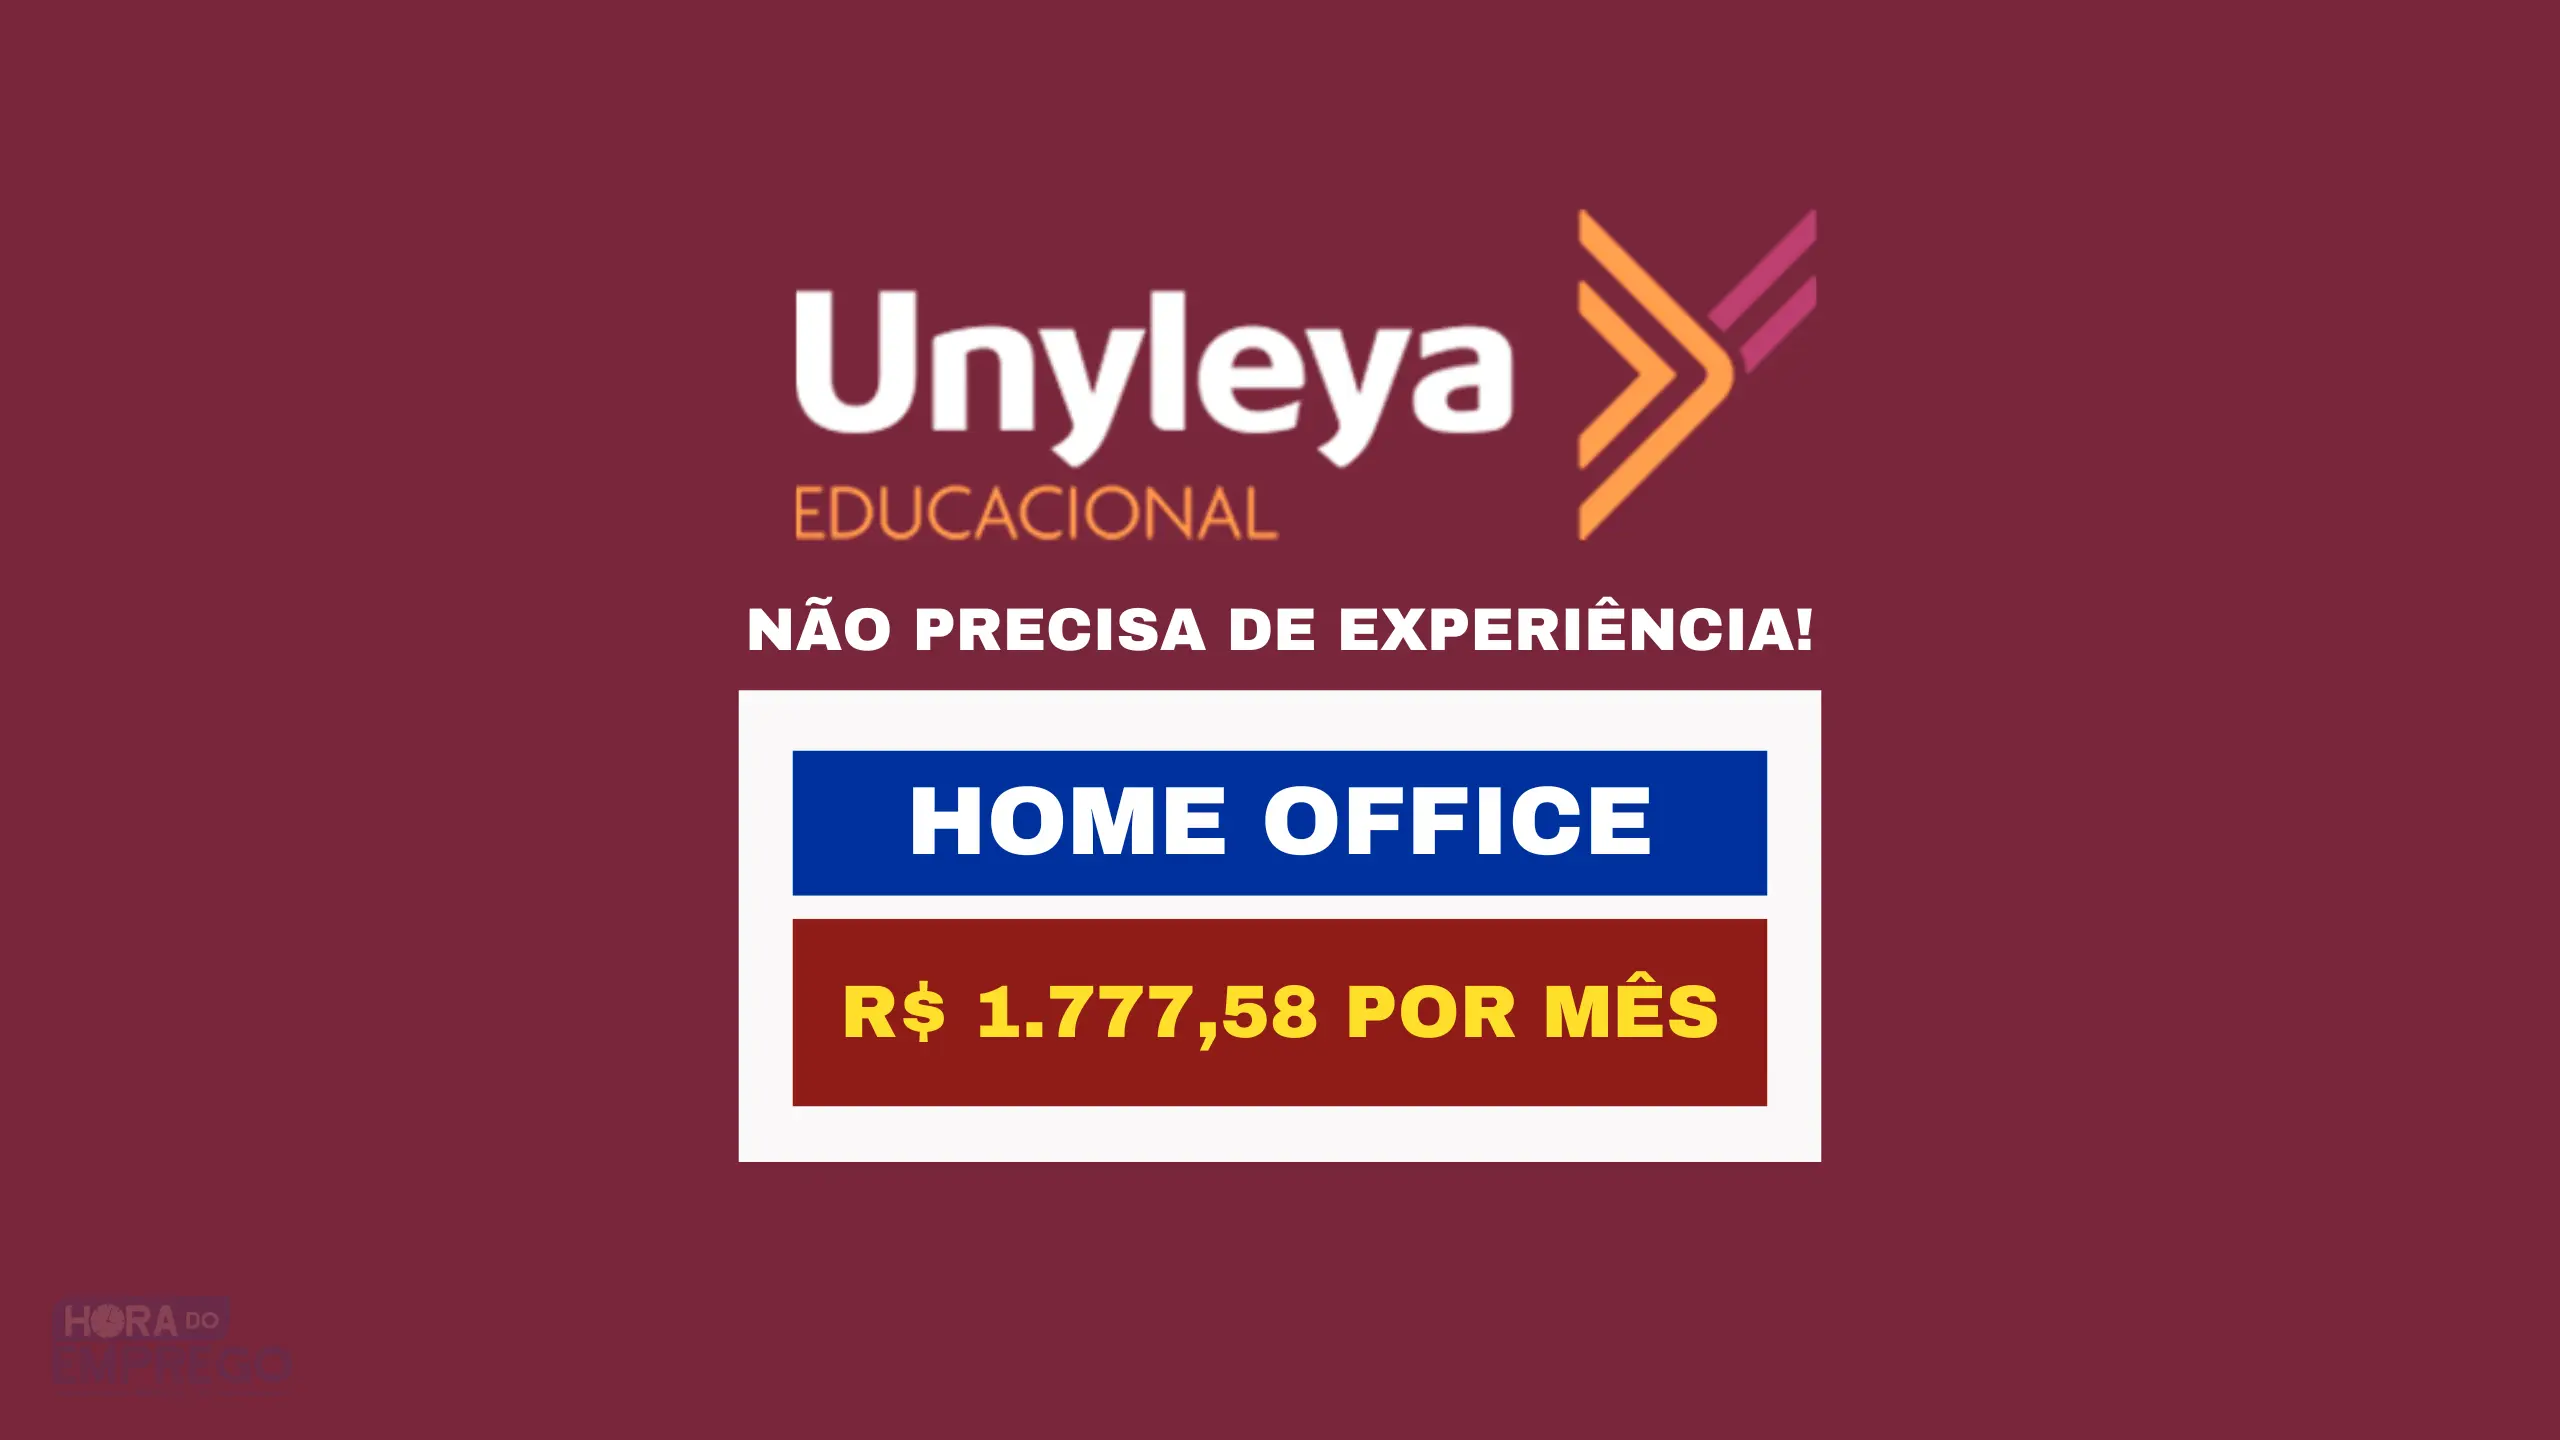 Sem experiência! Unyleya Educacional abre vagas HOME OFFICE com salário de R$ 1.777,58 para Auxiliar de Resgate Acadêmico